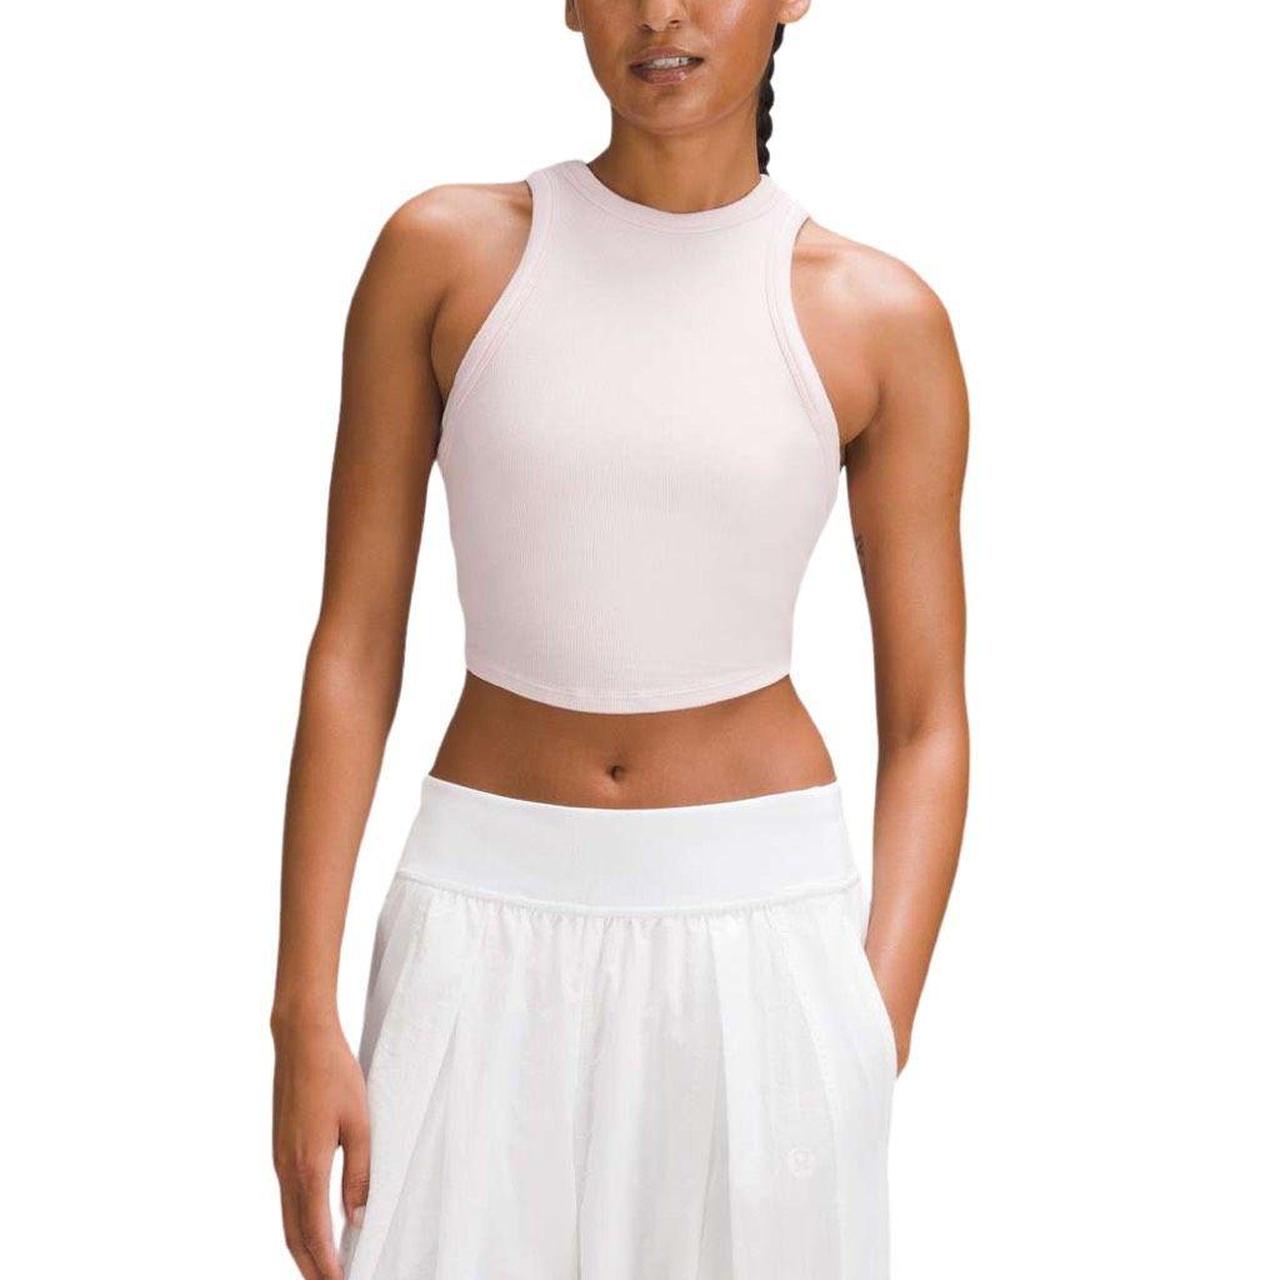 lululemon athletica, Tops, Lululemon Cropped Shirt Size Women